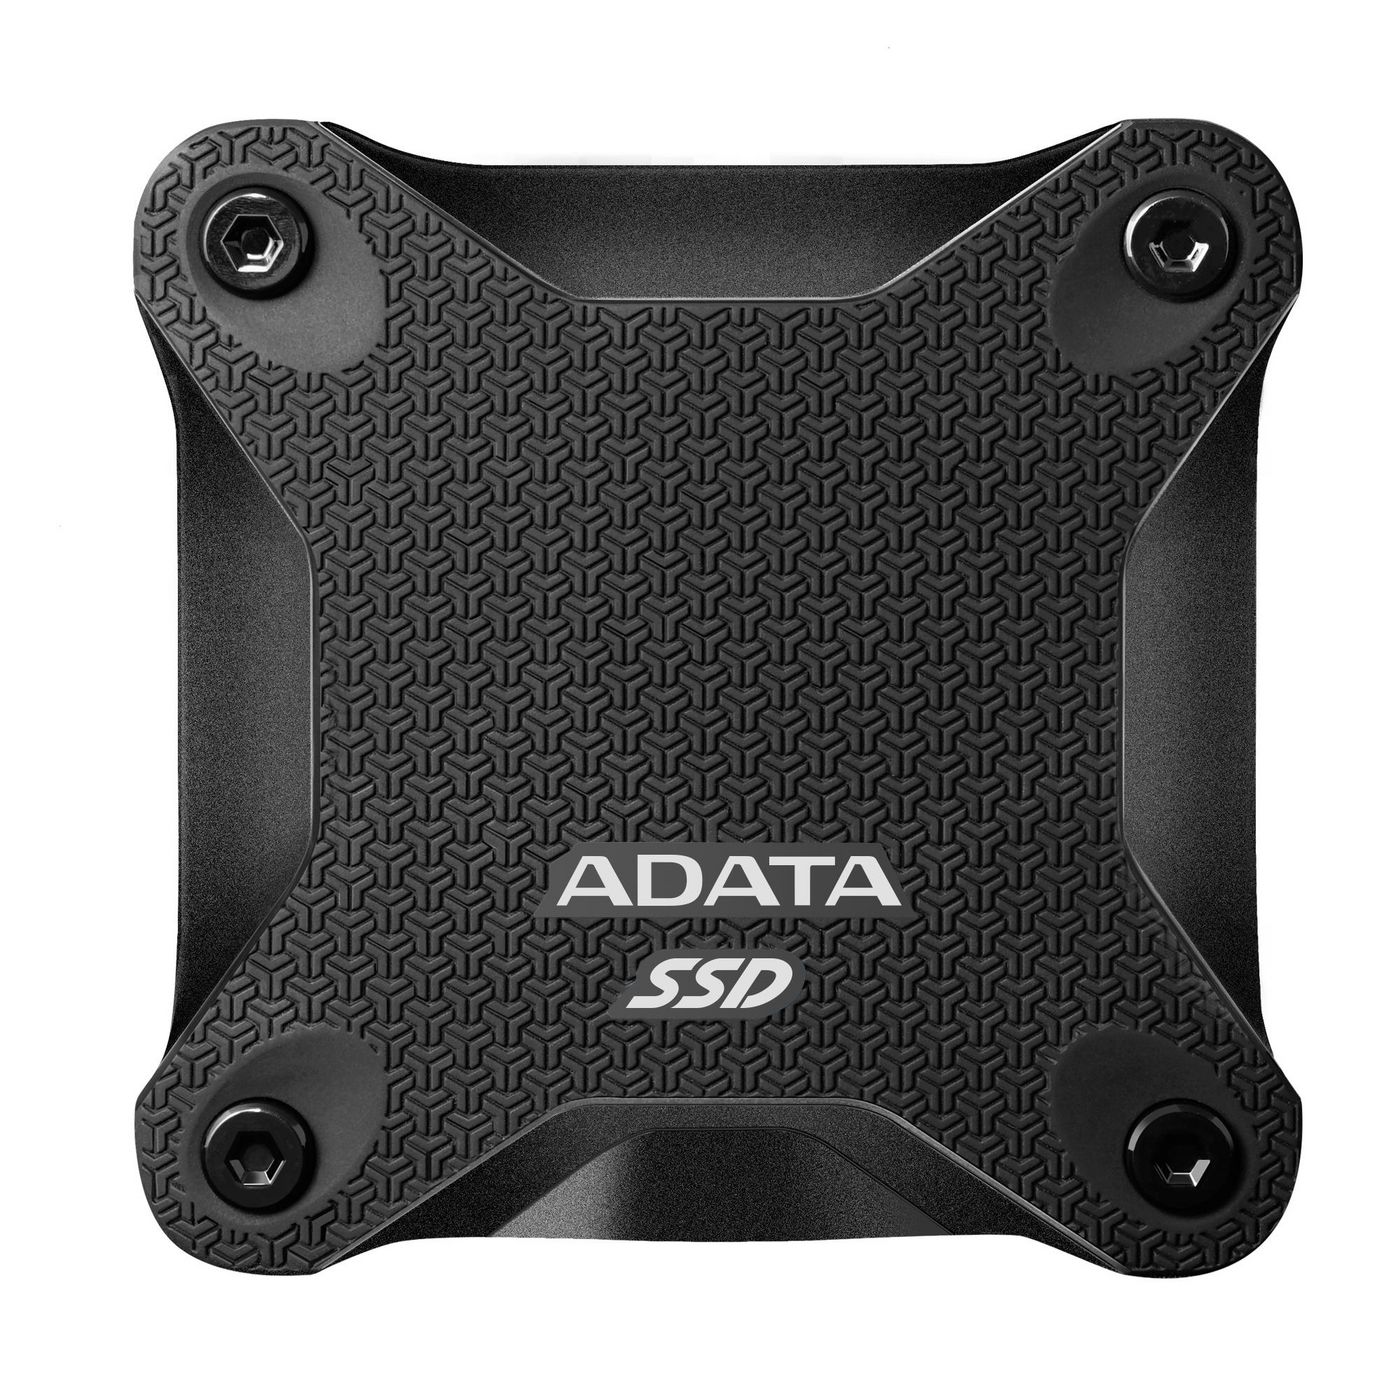 ADATA ASD600Q-960GU31-CBK W127280605 960 GB SD600Q External SSD, 